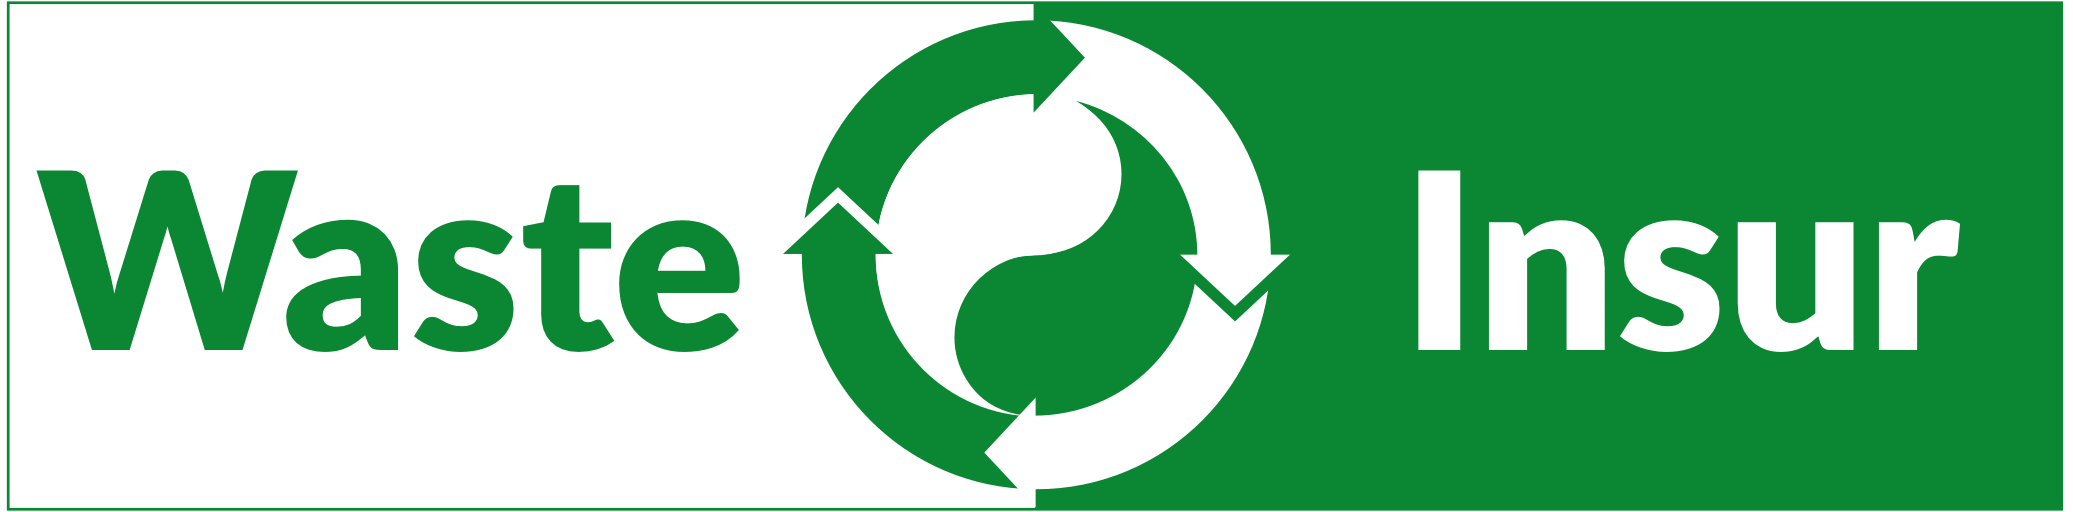 WasteInsur_Logo